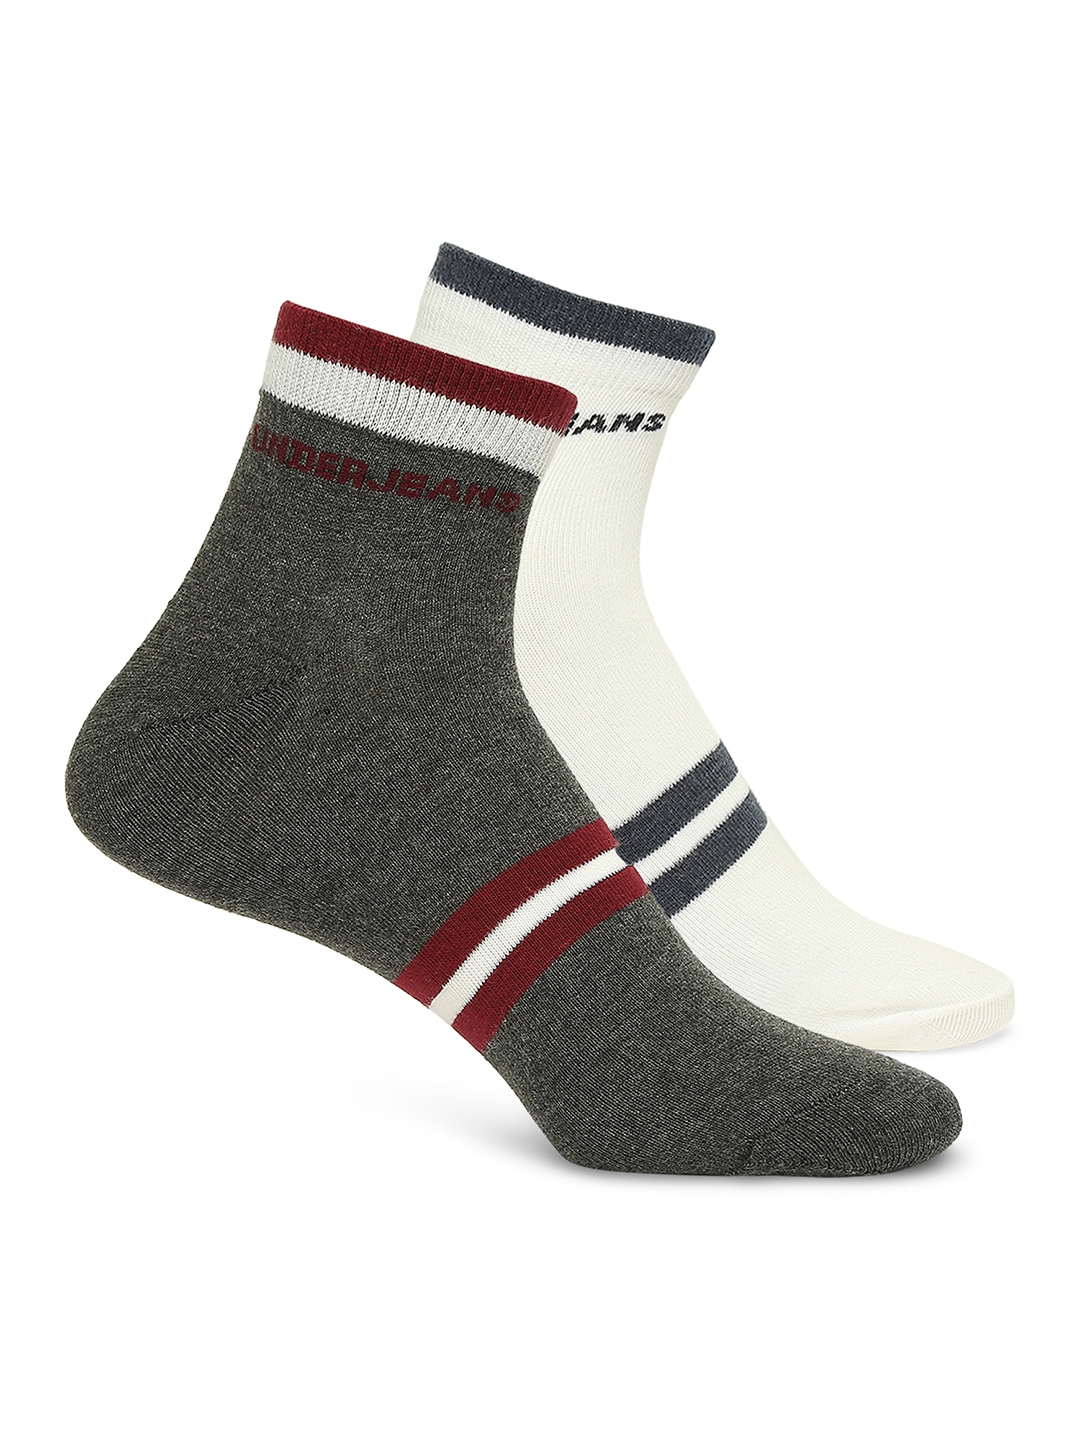 Underjeans by Spykar Premium Anthra Melange & White Ankle Length Socks - Pack Of 2